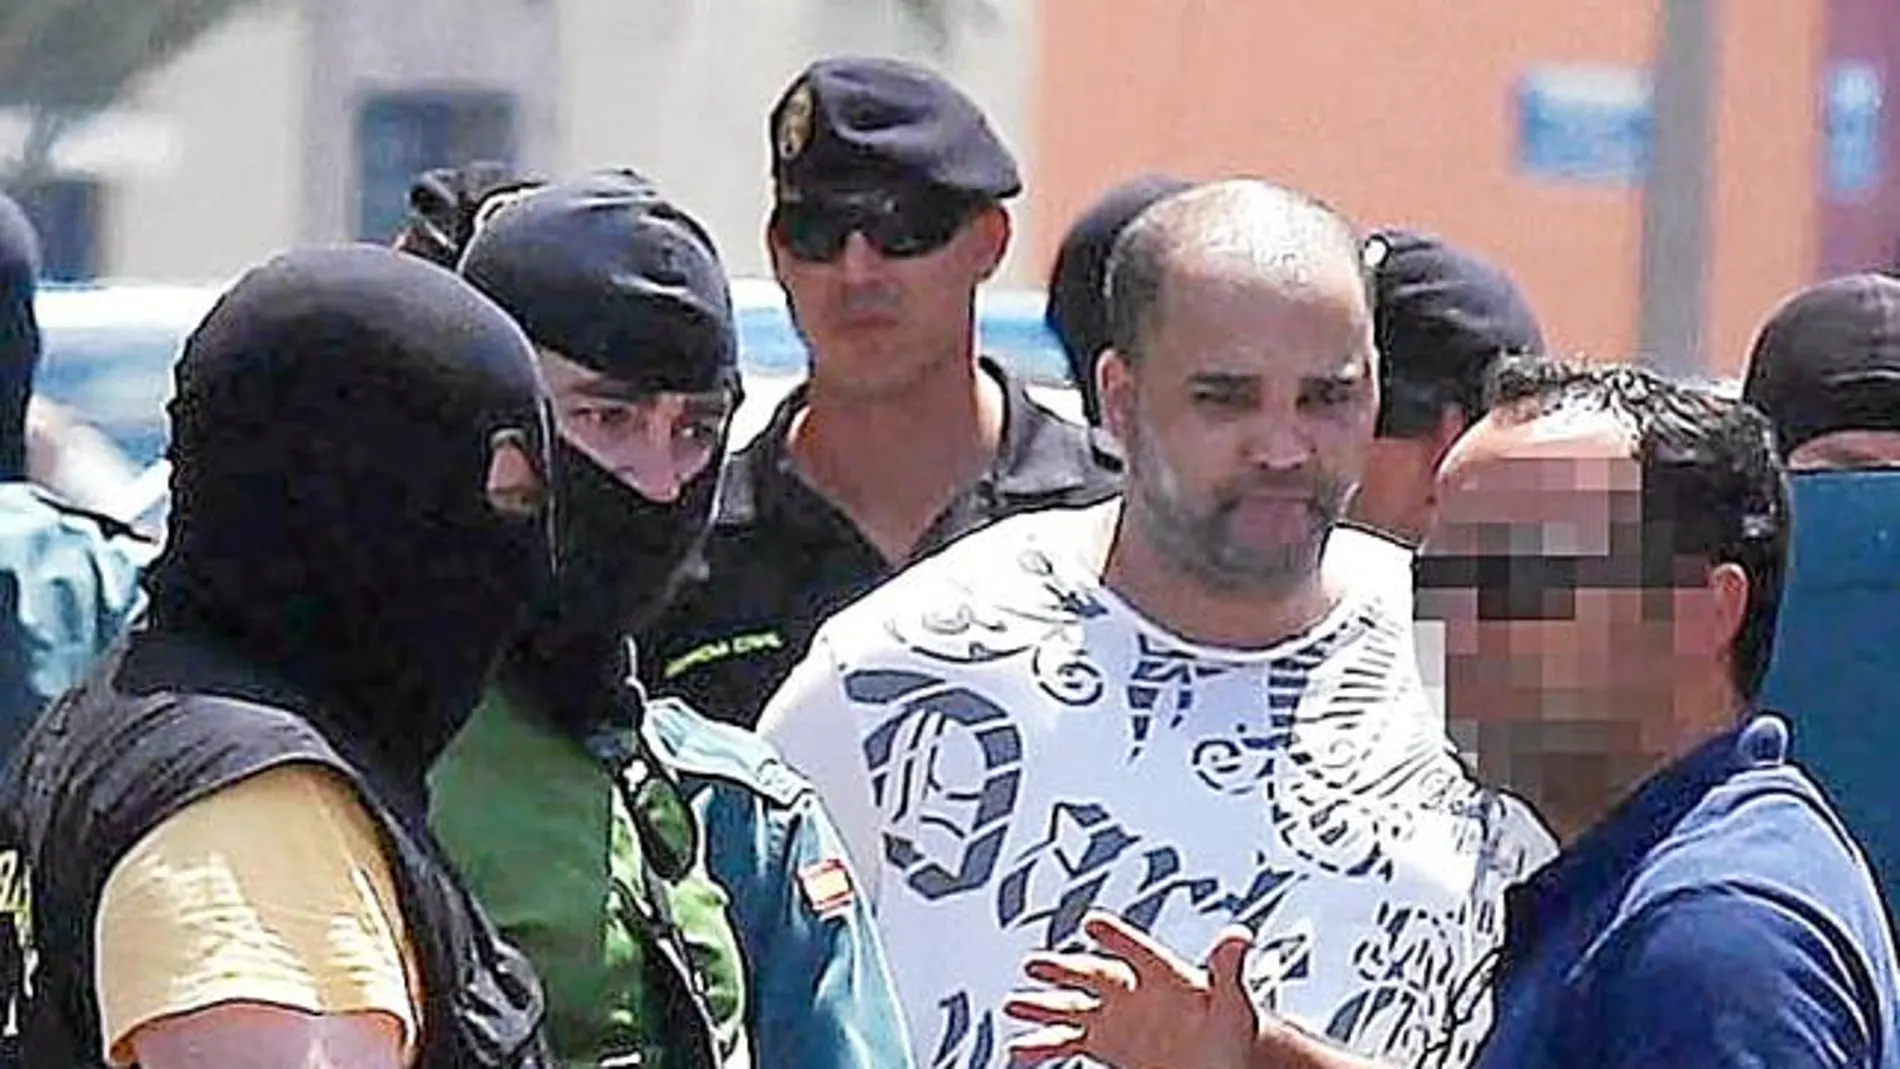 Momento de la detención de Abdelllatif Aoulad Chiba, el pasado miércoles, en la localidad gaditana de La Línea de la Concepción